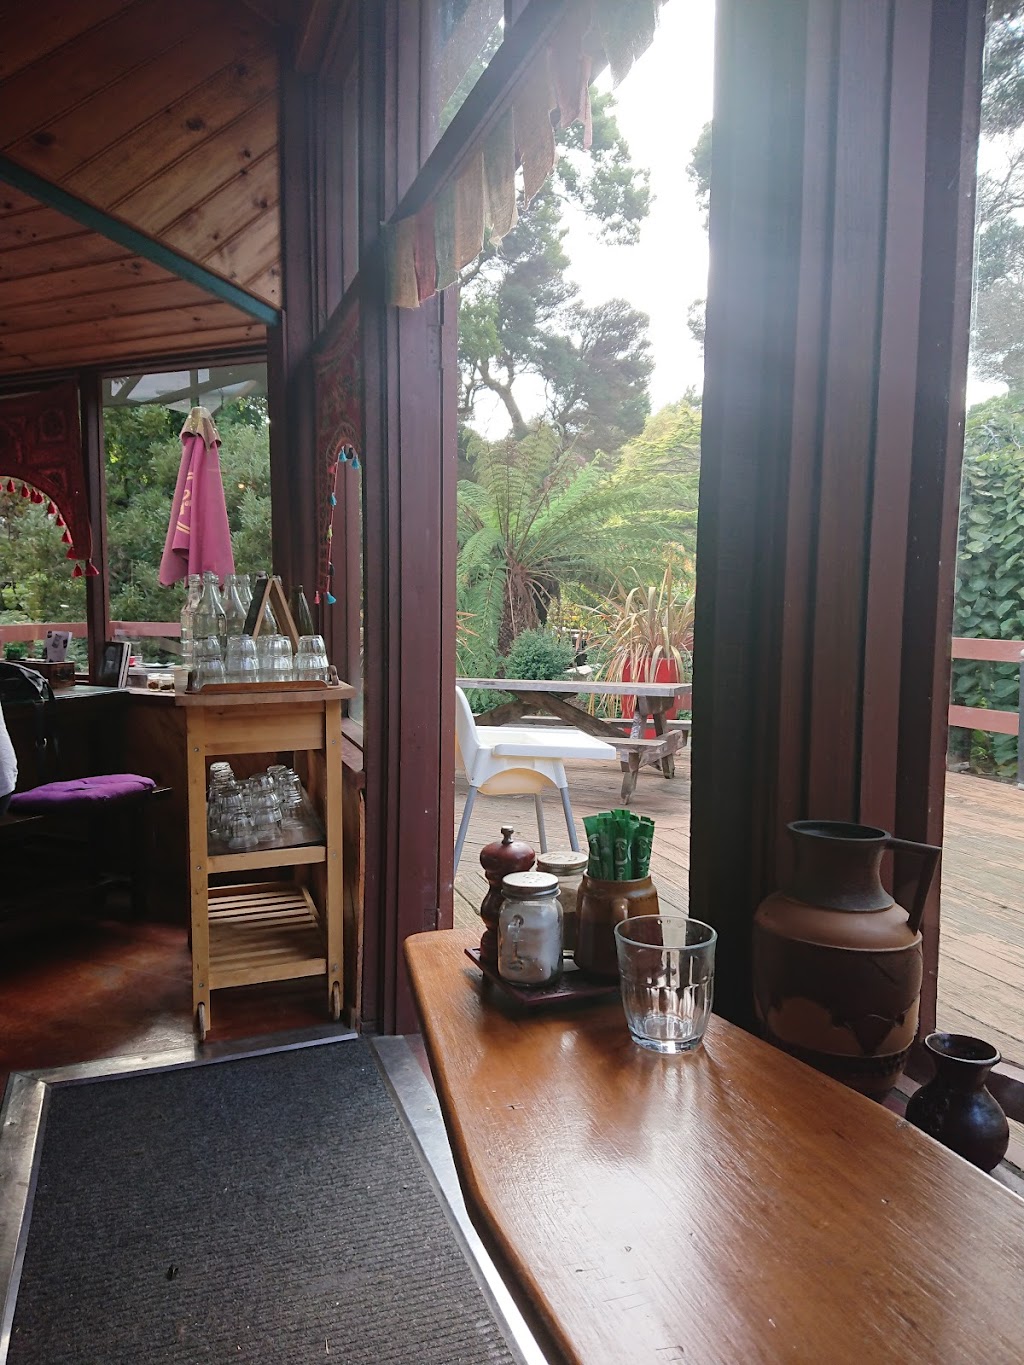 Secret Buddha Café | cafe | 63 W Park Grove, Park Grove TAS 7320, Australia | 0475851864 OR +61 475 851 864